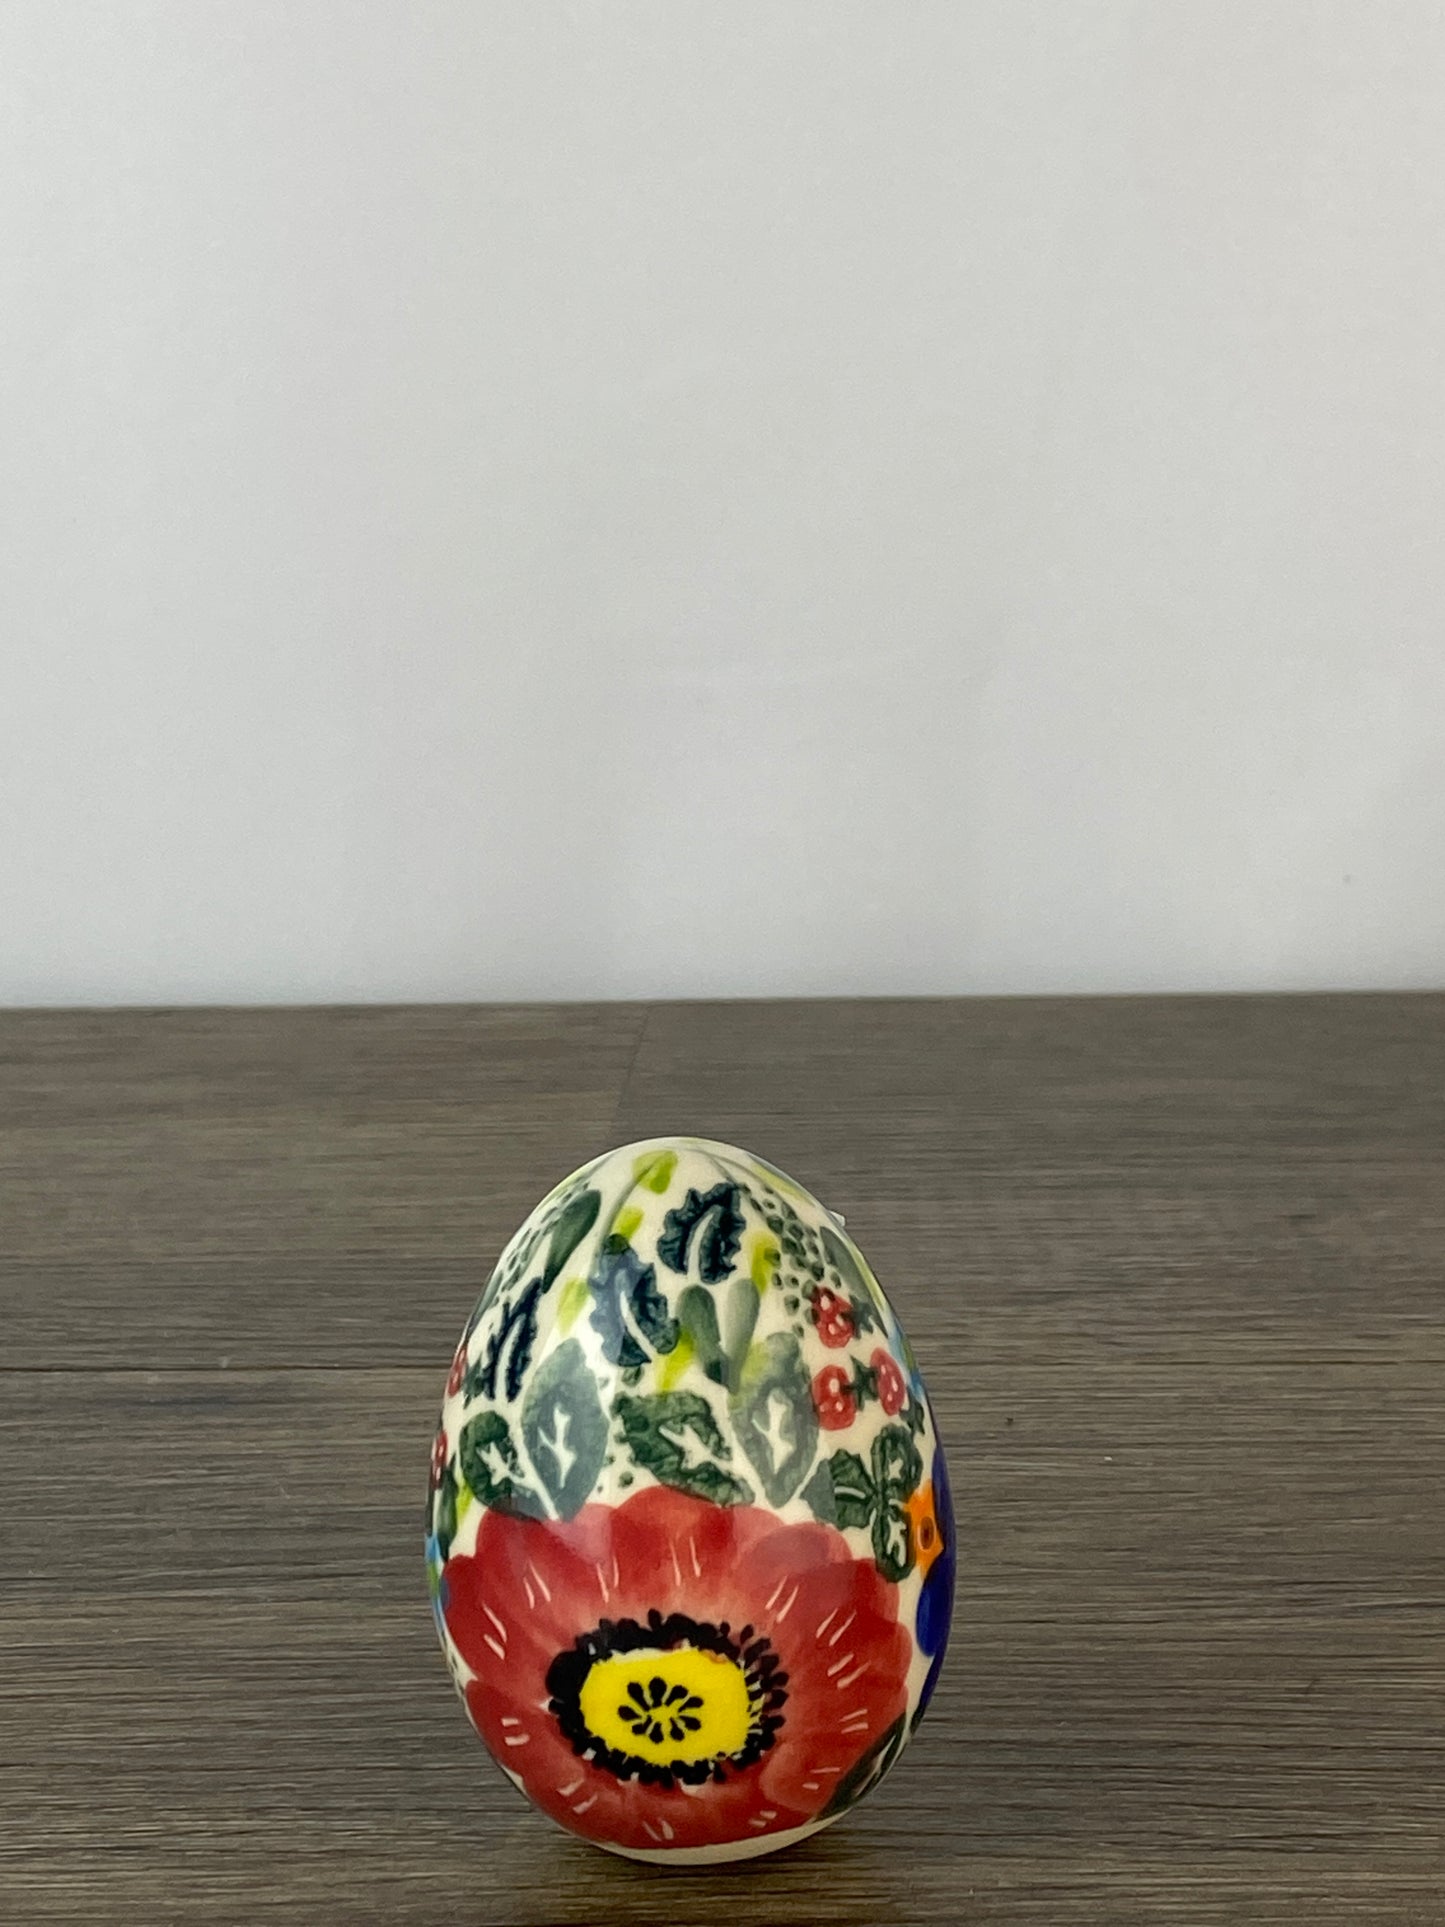 Vena Large Ceramic Easter Egg - Shape V037 - Pattern A520